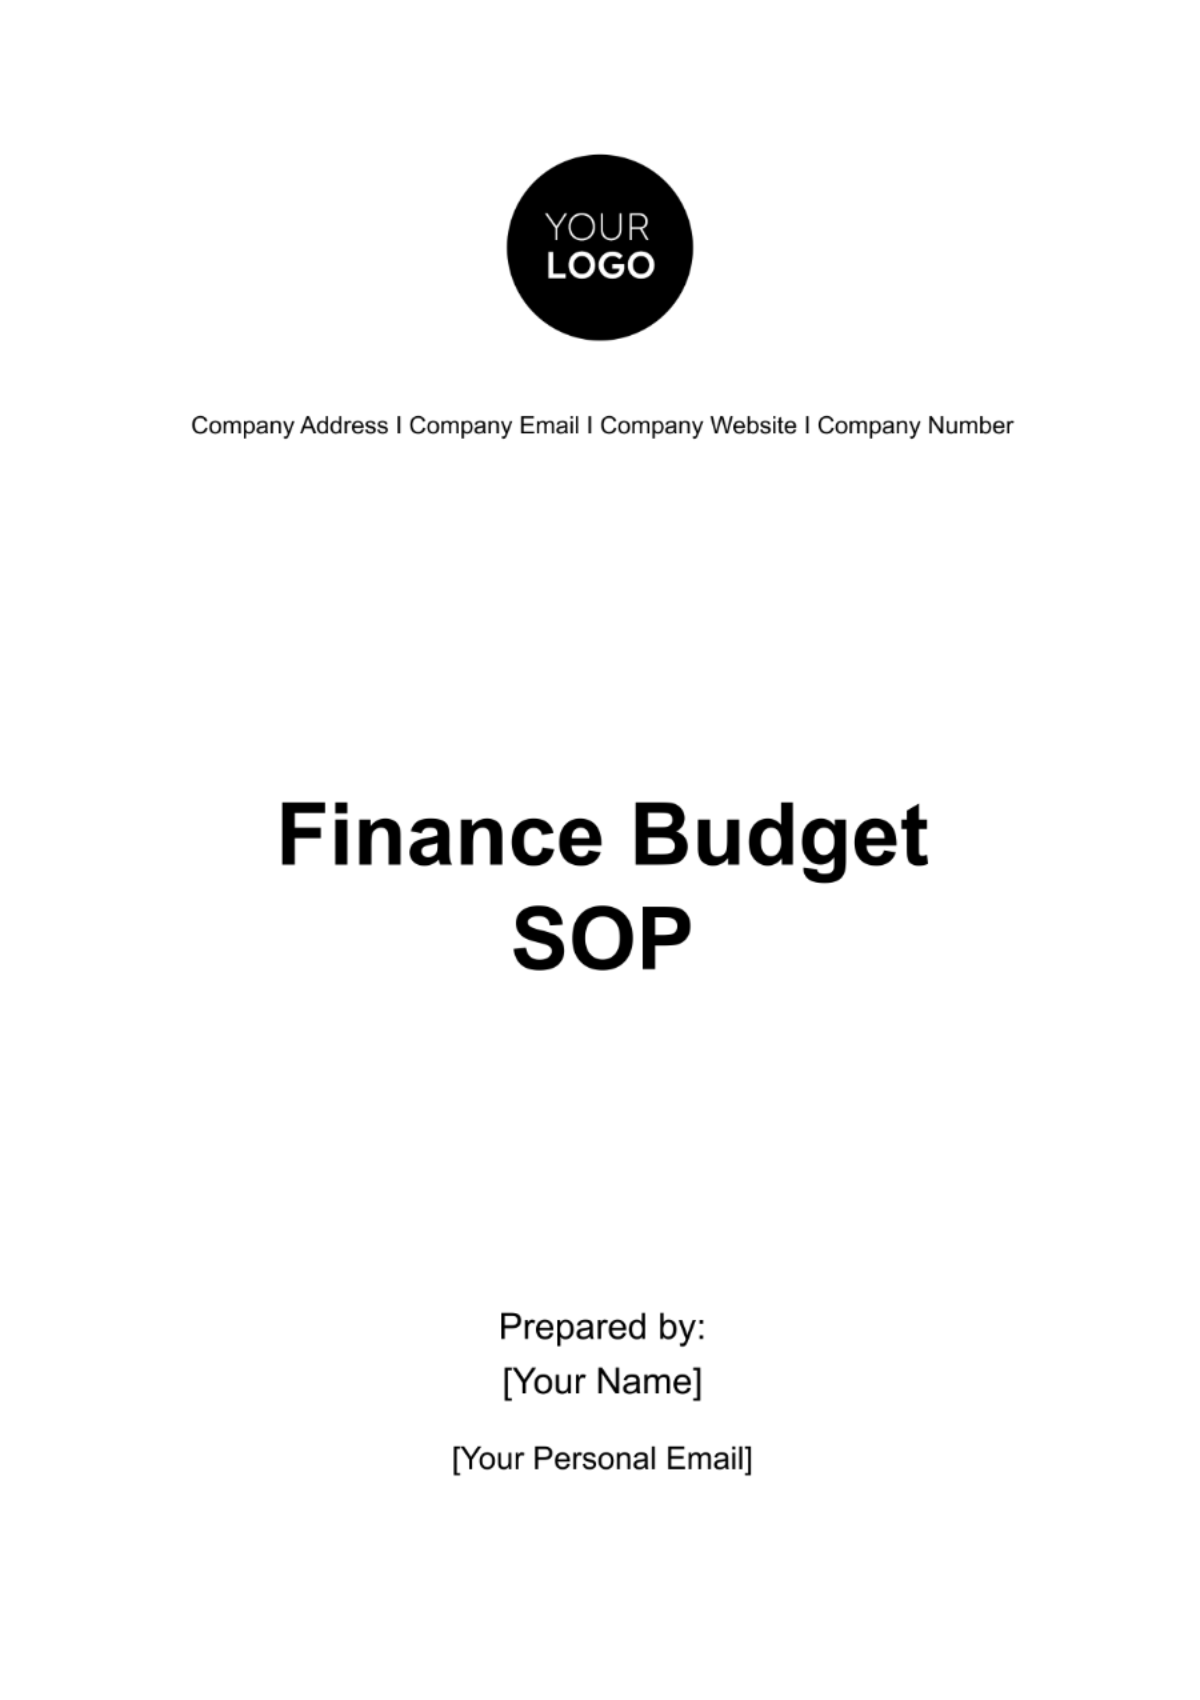 Finance Budget SOP Template